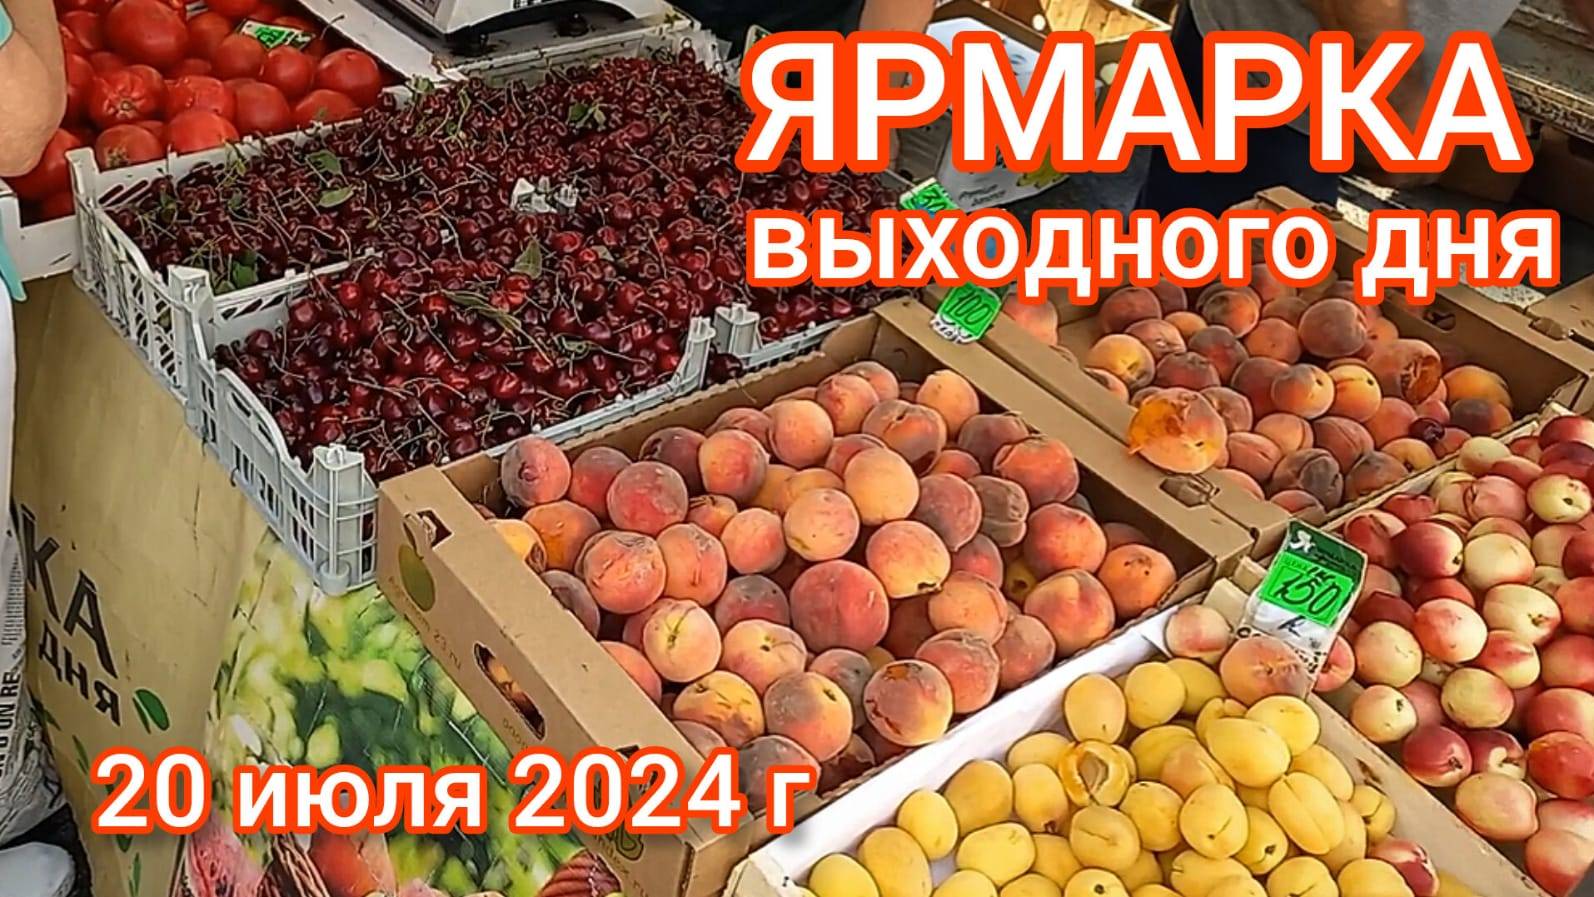 Краснодар - Ярмарка выходного дня на ул. Одесской - цены на продукты - 20 июля 2024 г.